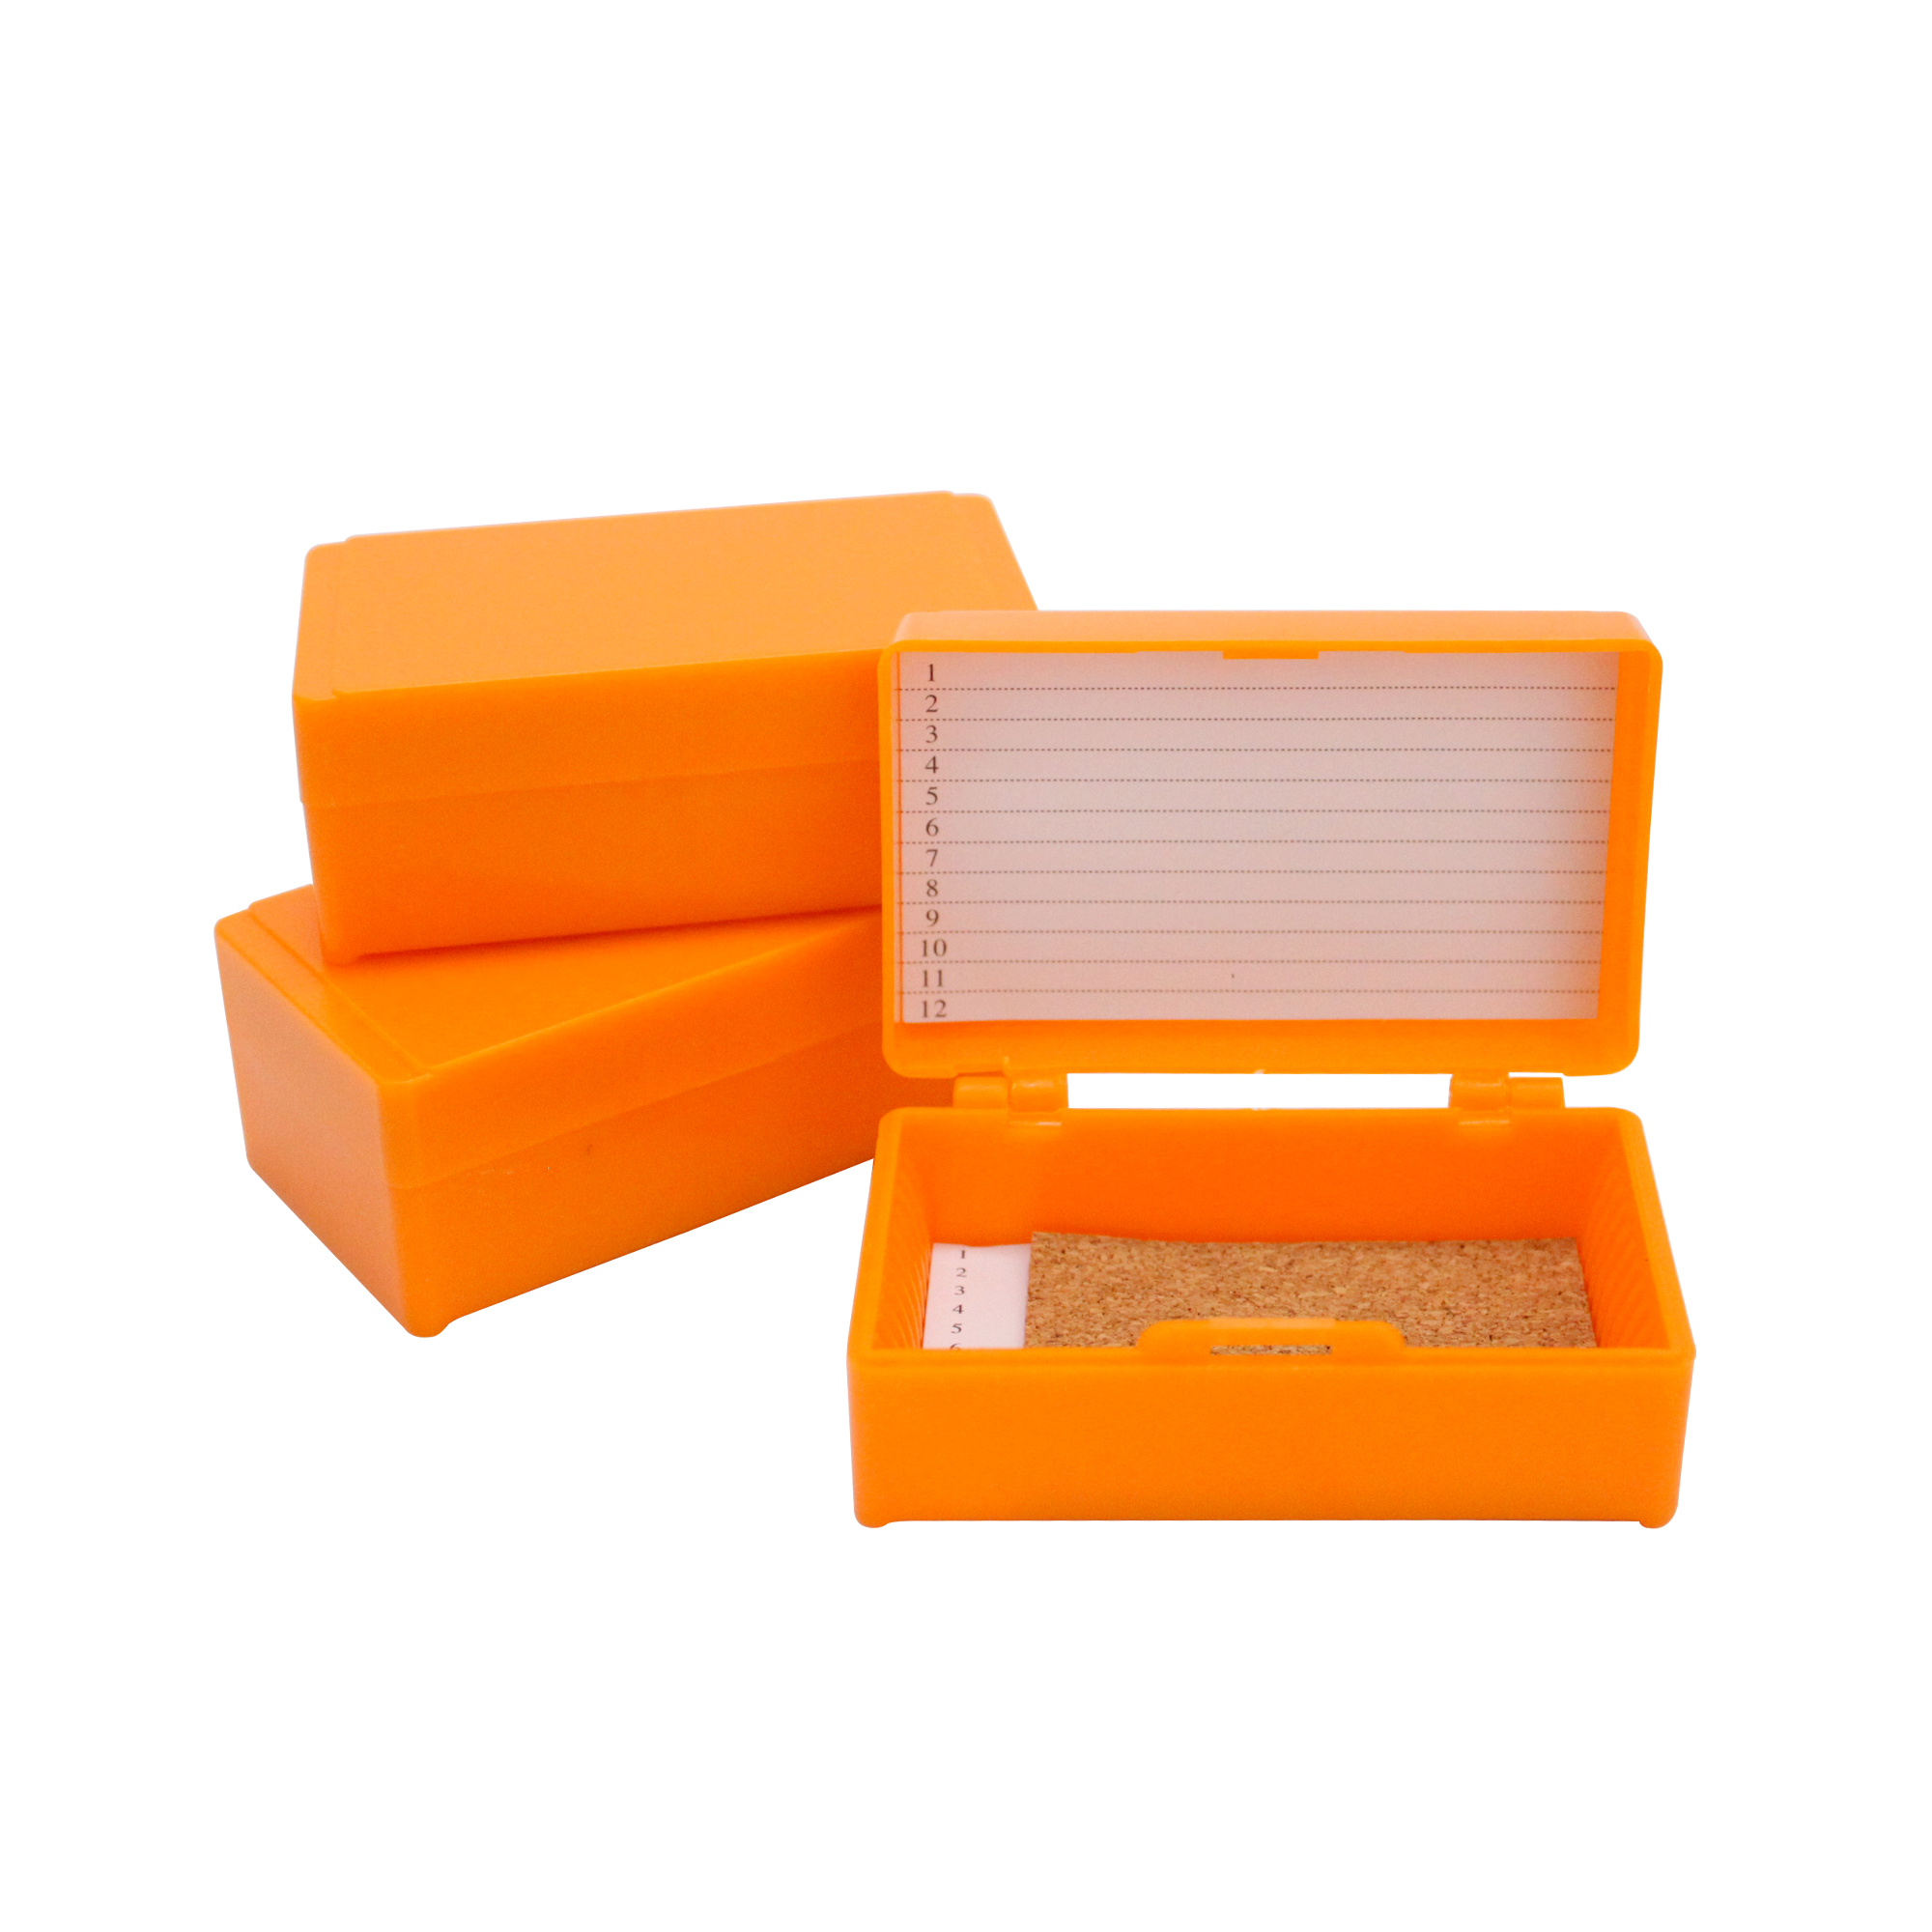 12片装载玻片存储盒,橘色